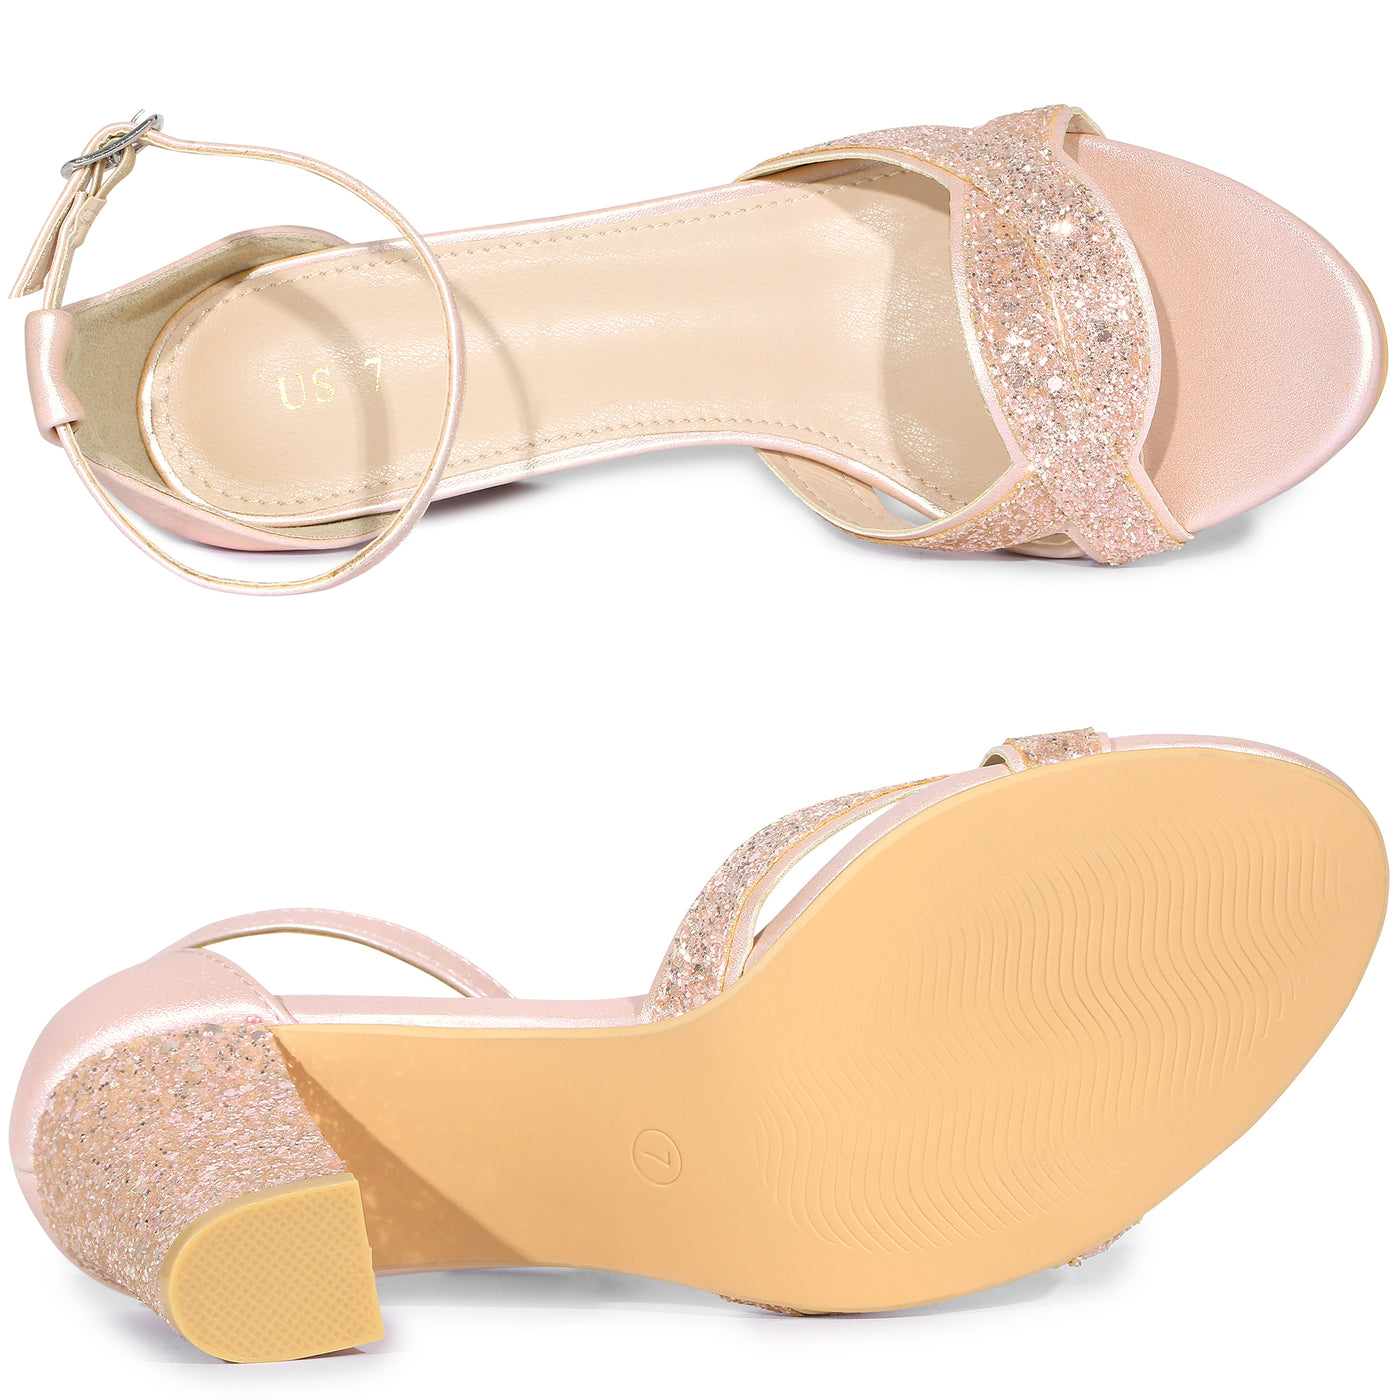 Allegra K Women's Bling Glitter Ankle Strap High Chunky Heel Sandals